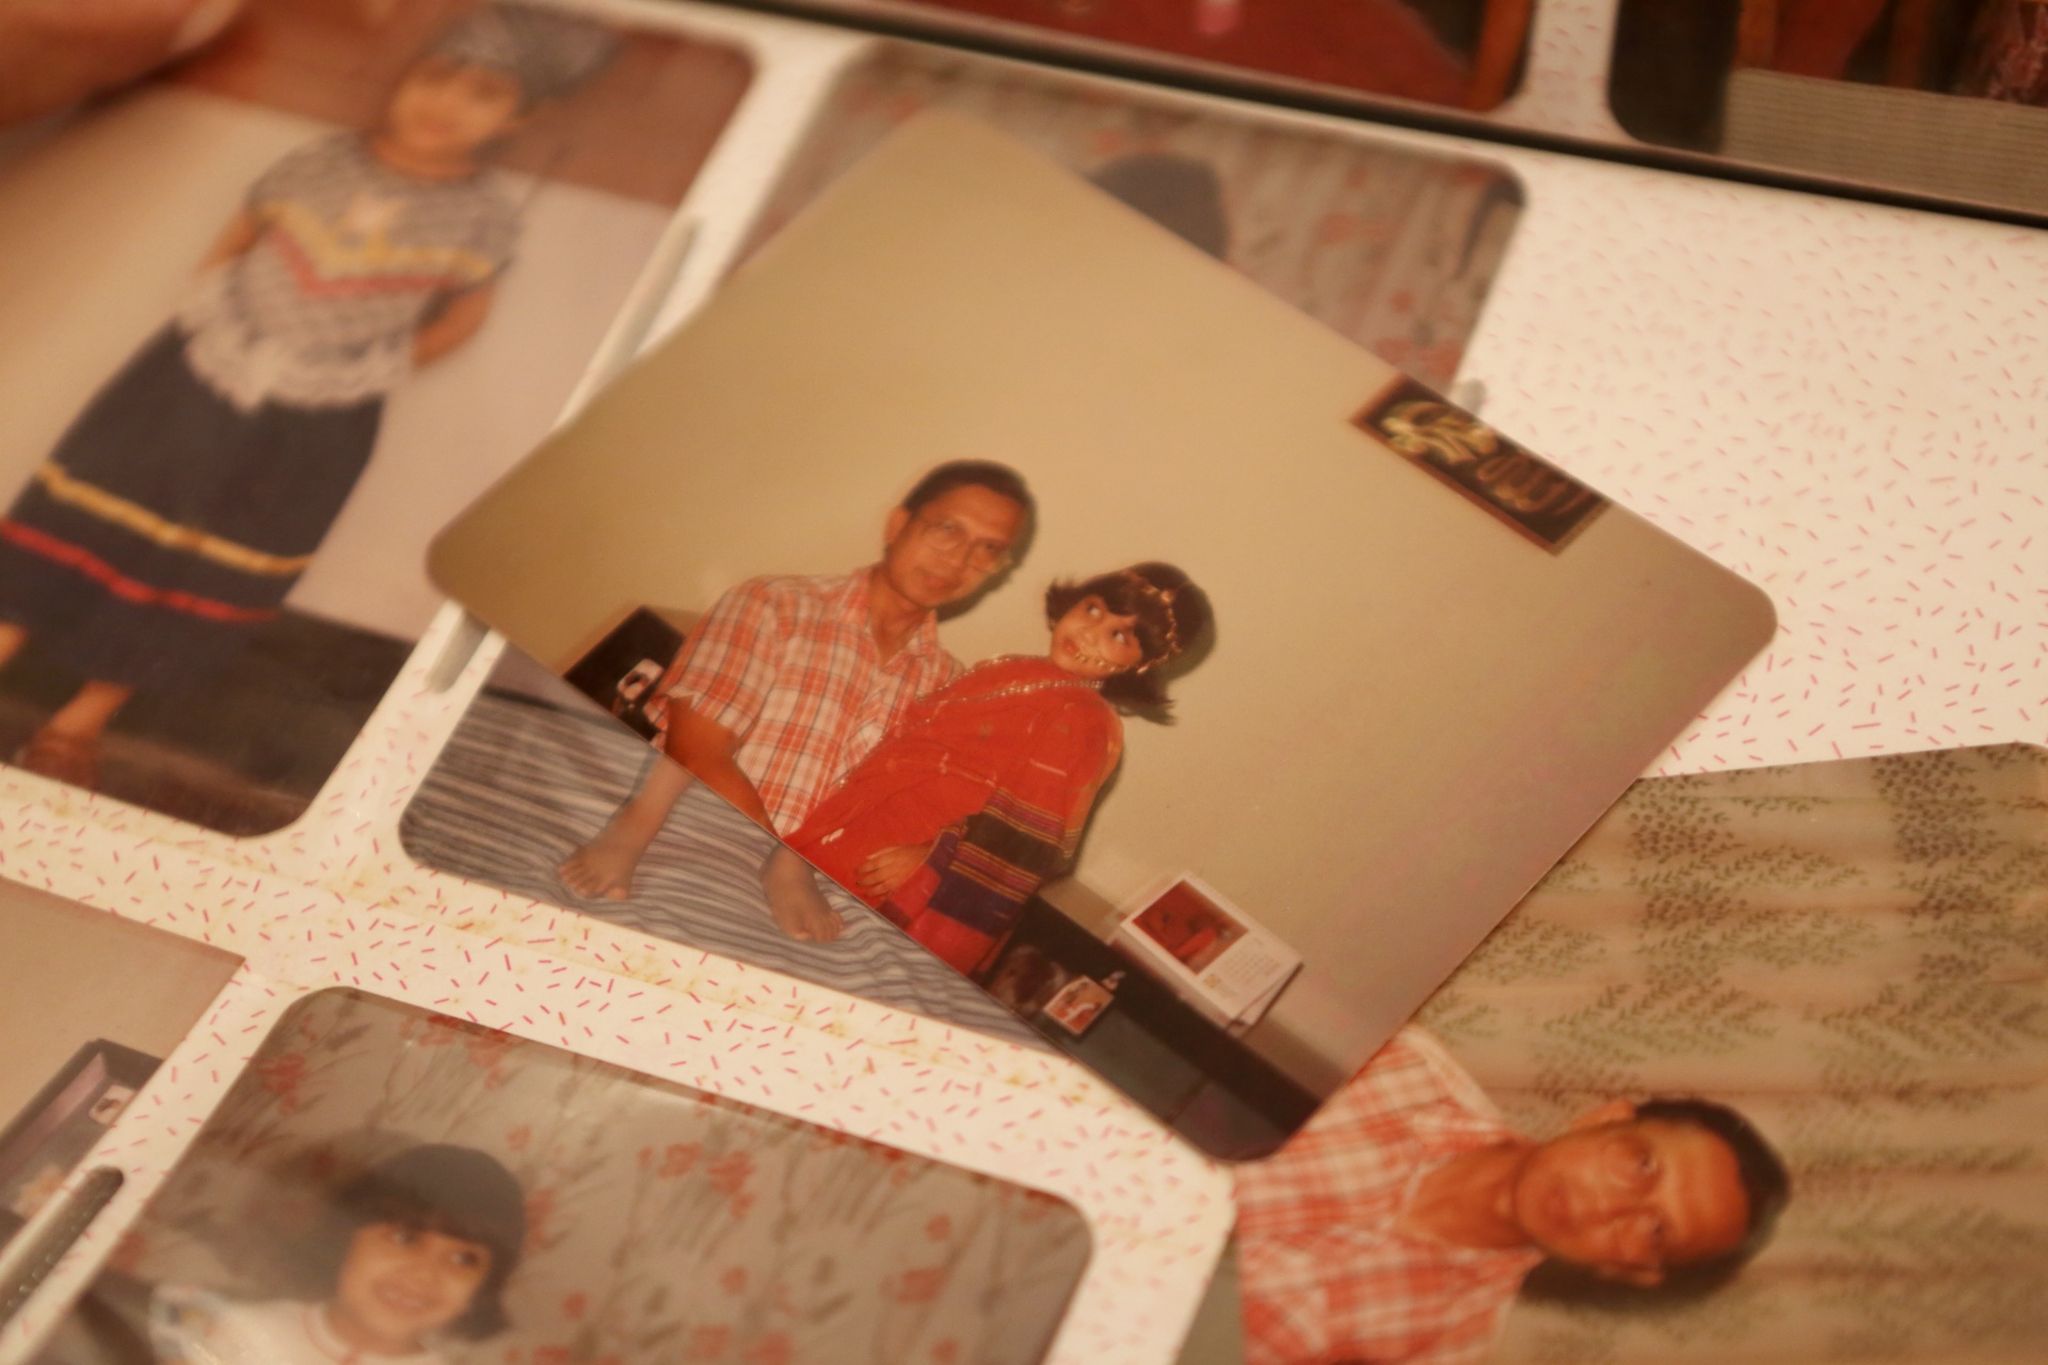 Фотографии Шагуфты и ее отца в семейном альбоме